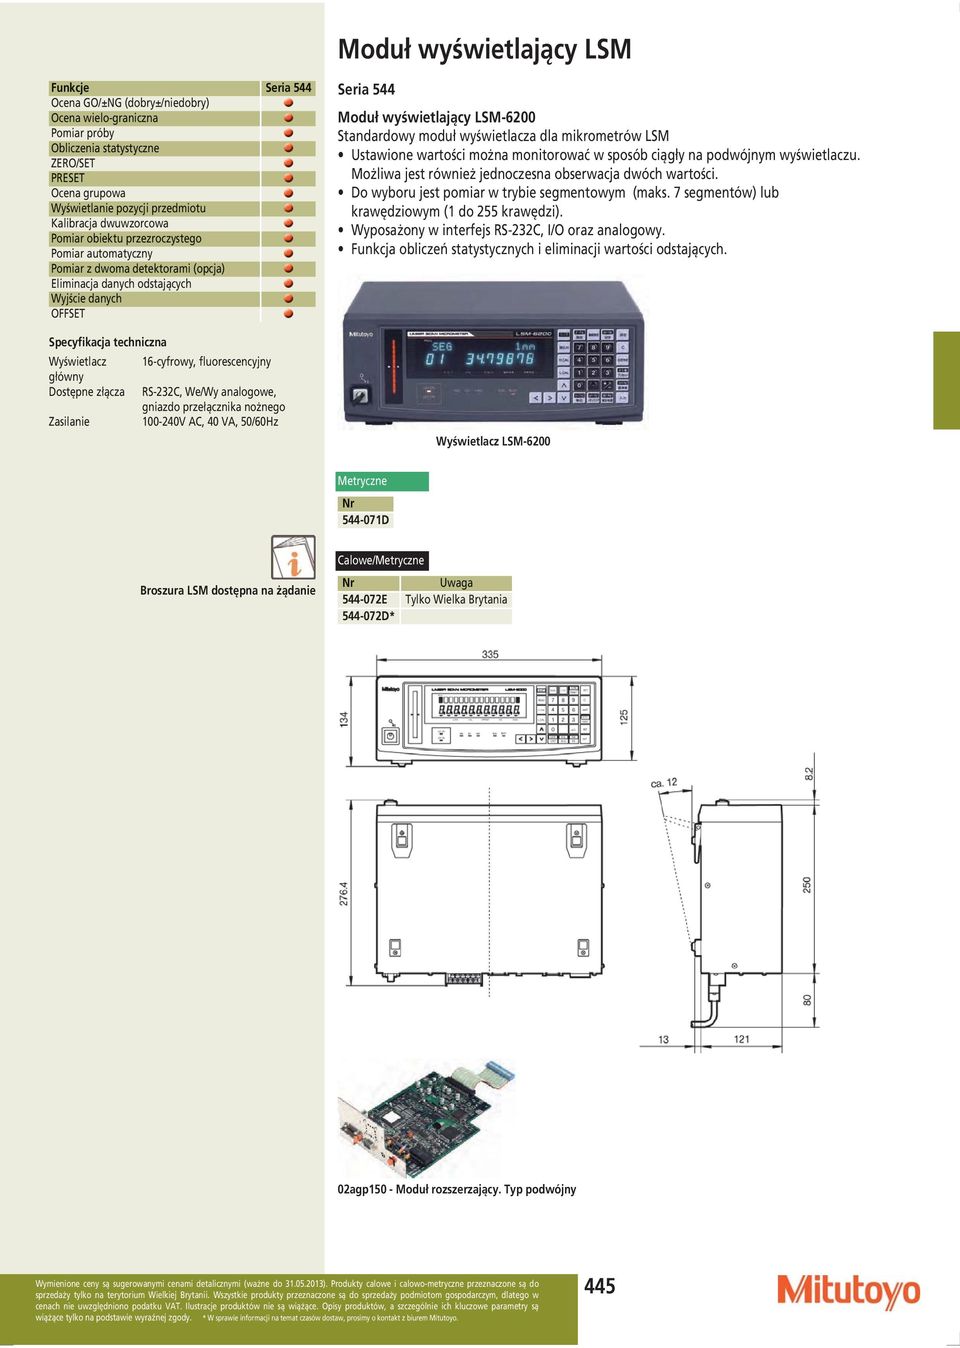 Dostępne złącza RS-232C, We/Wy analogowe, gniazdo przełącznika nożnego Zasilanie 100-240V AC, 40 VA, 50/60Hz Moduł wyświetlający LSM-6200 Standardowy moduł wyświetlacza dla mikrometrów LSM Ustawione